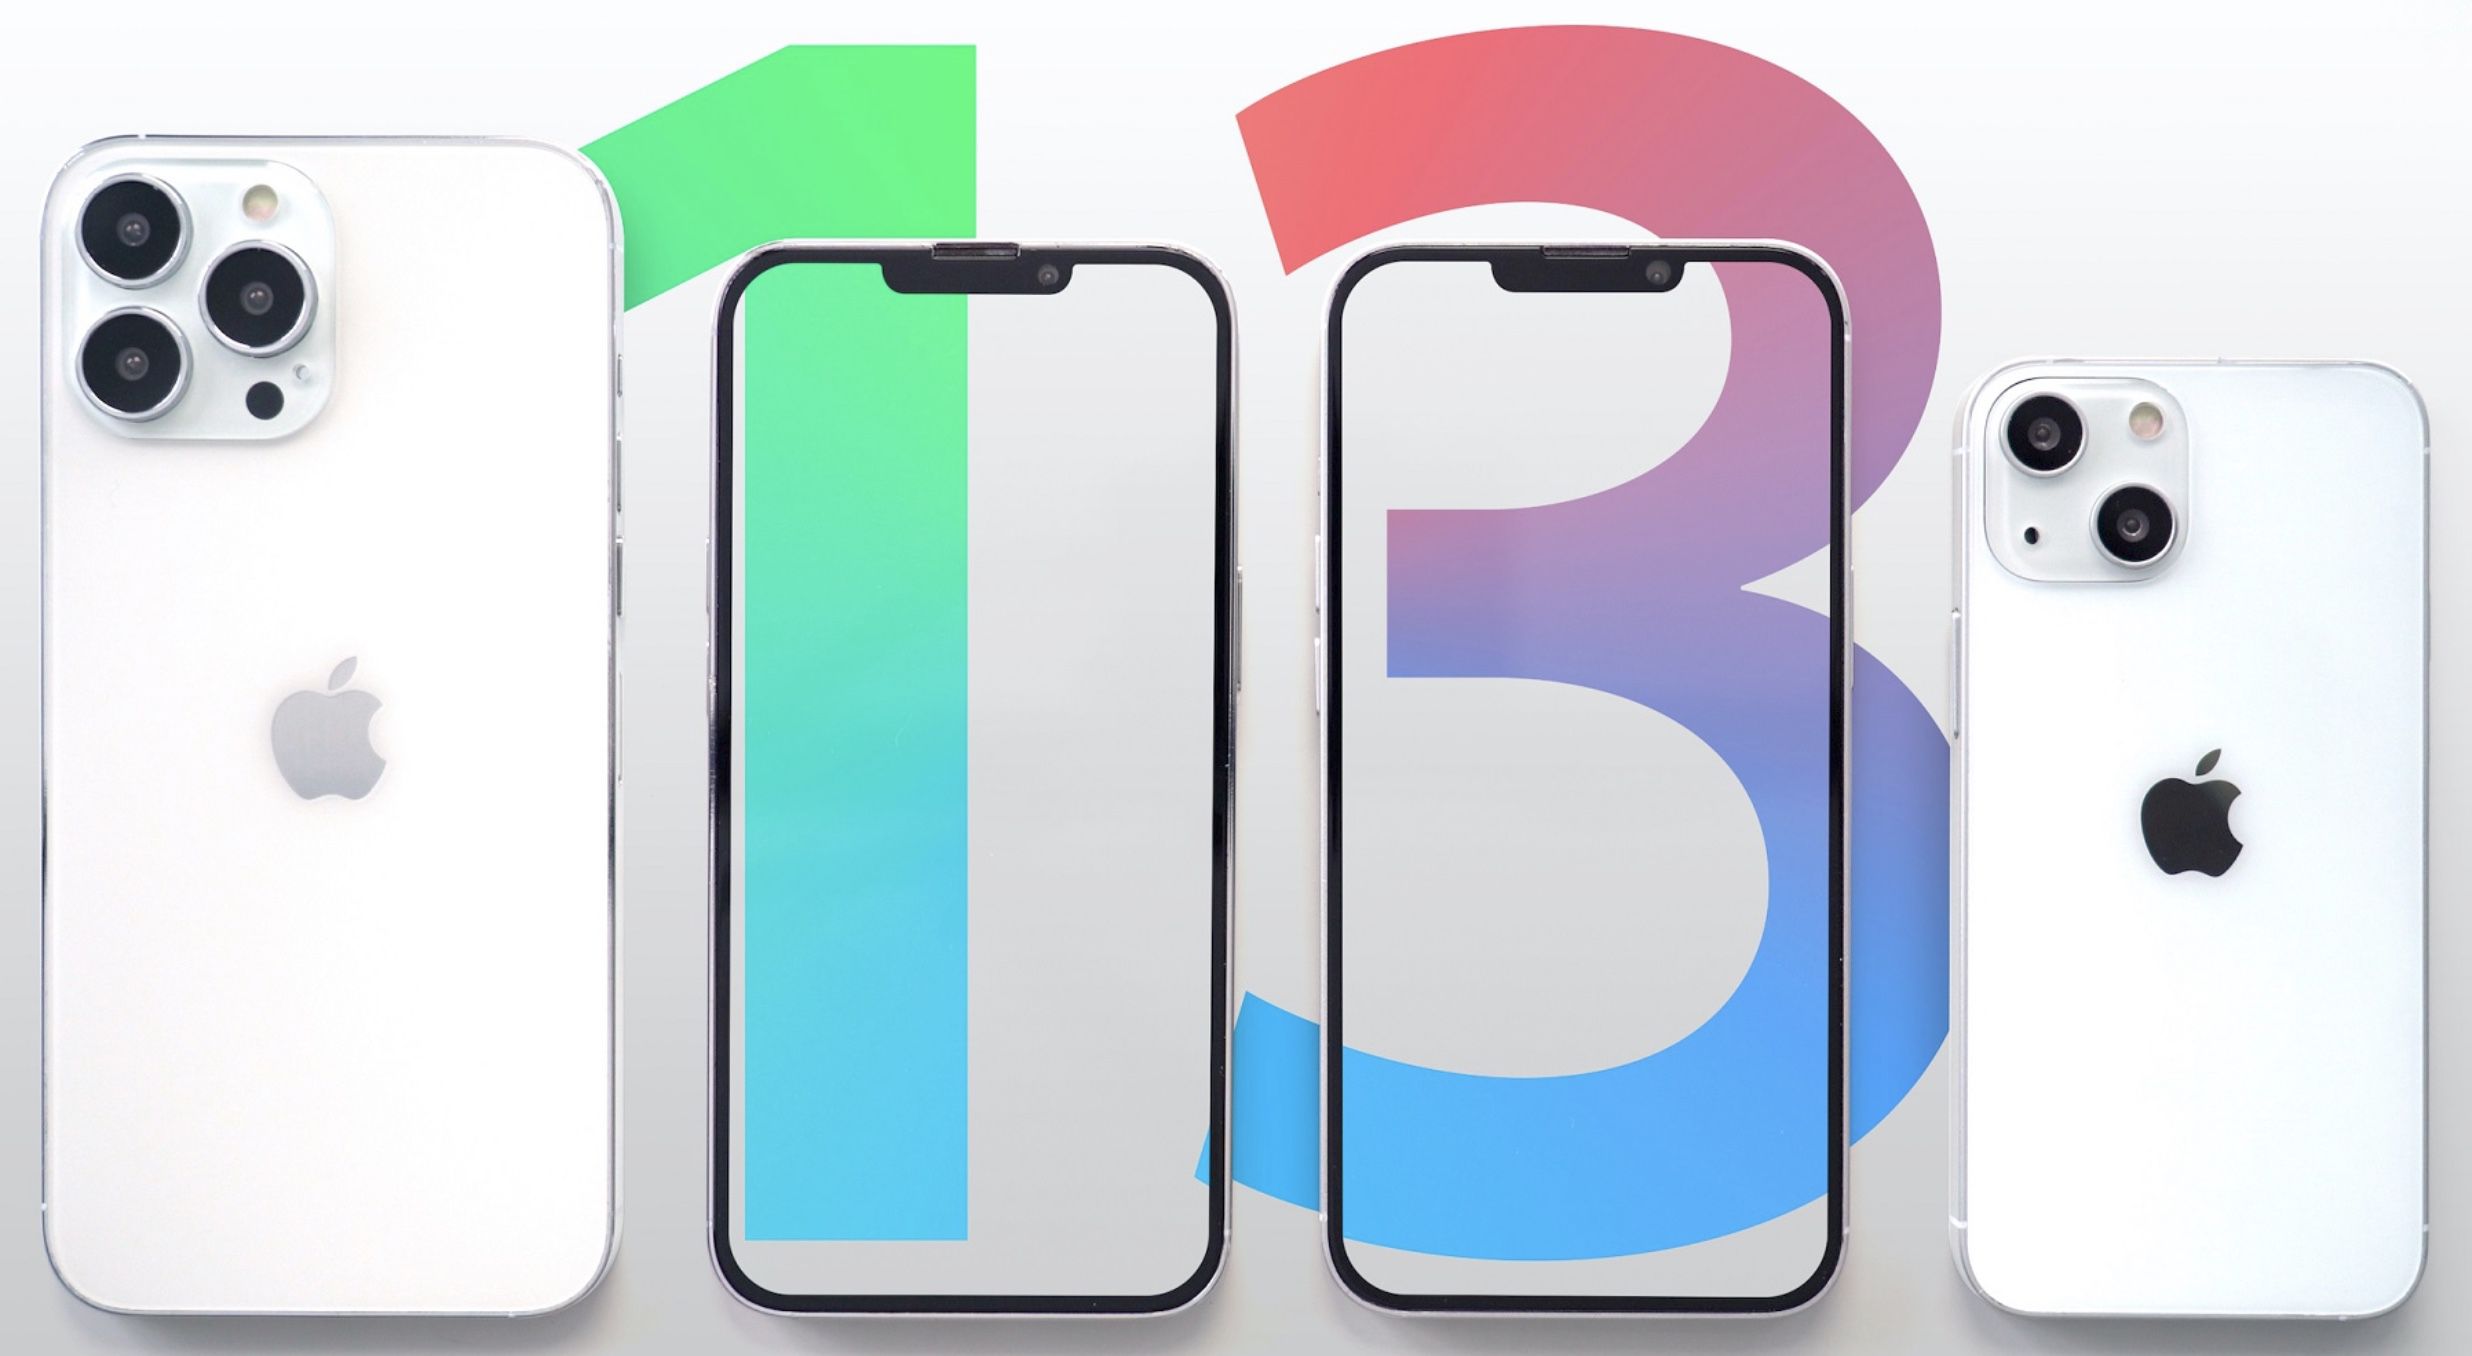 Offizieller Termin bekannt: Apple stellt das neue iPhone 13 am 14. September vor!